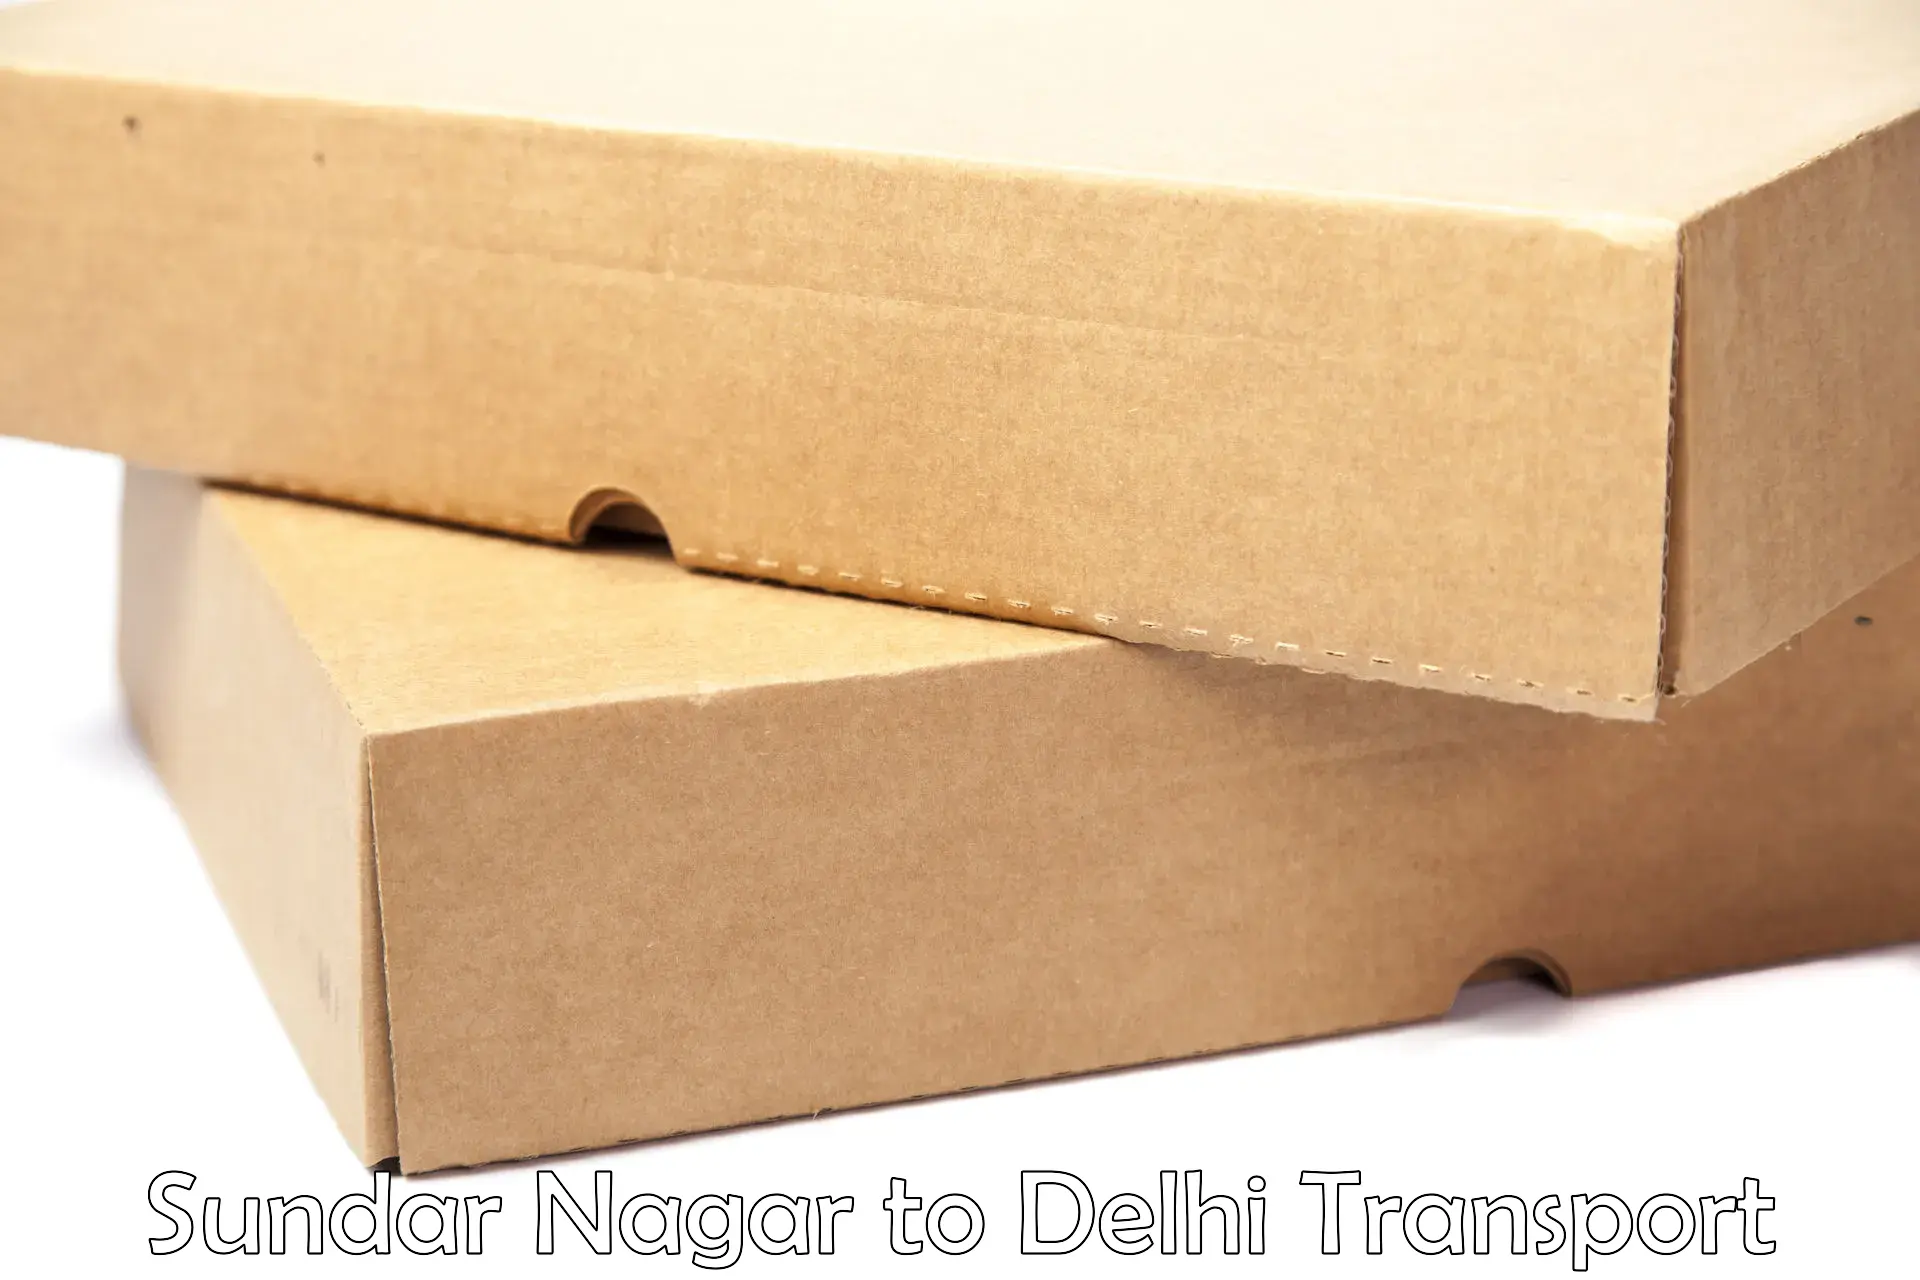 Domestic goods transportation services in Sundar Nagar to East Delhi